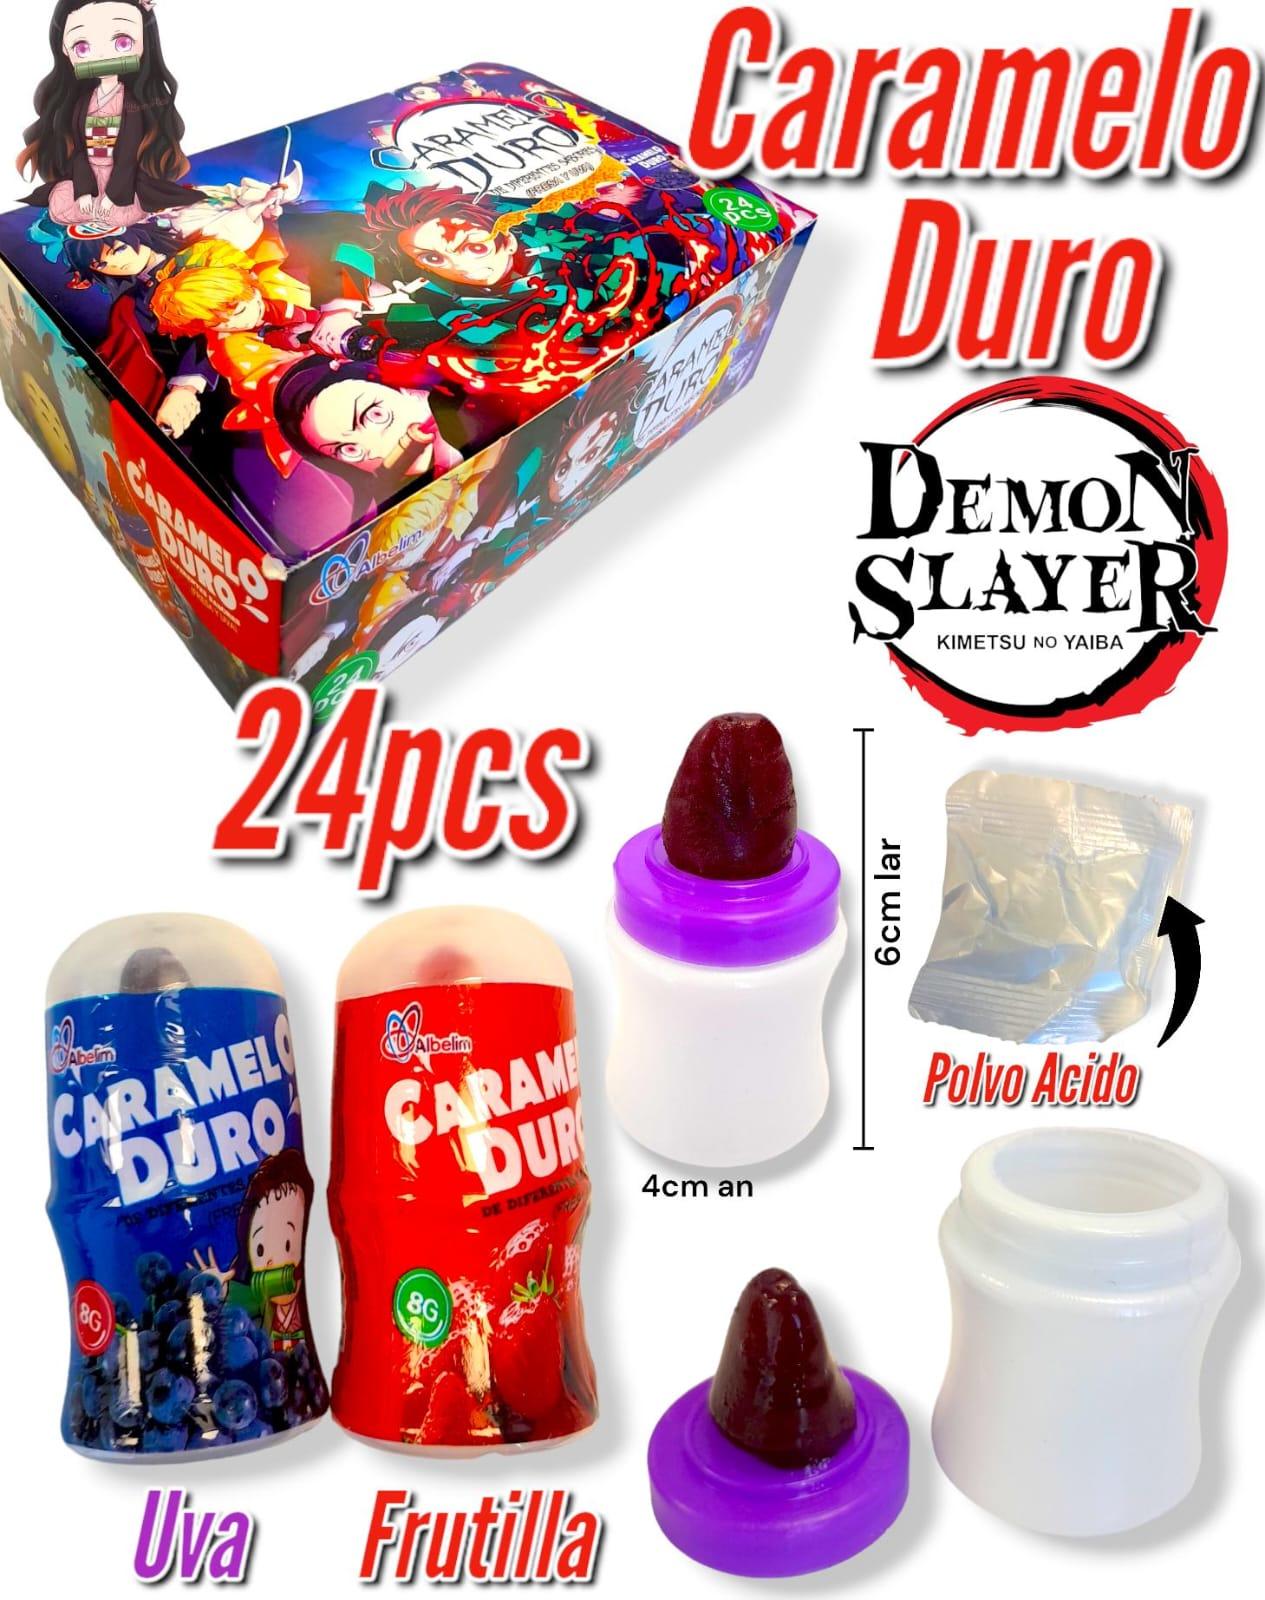 Caramelo Duro DEMON SLAYER +Polvo Acido